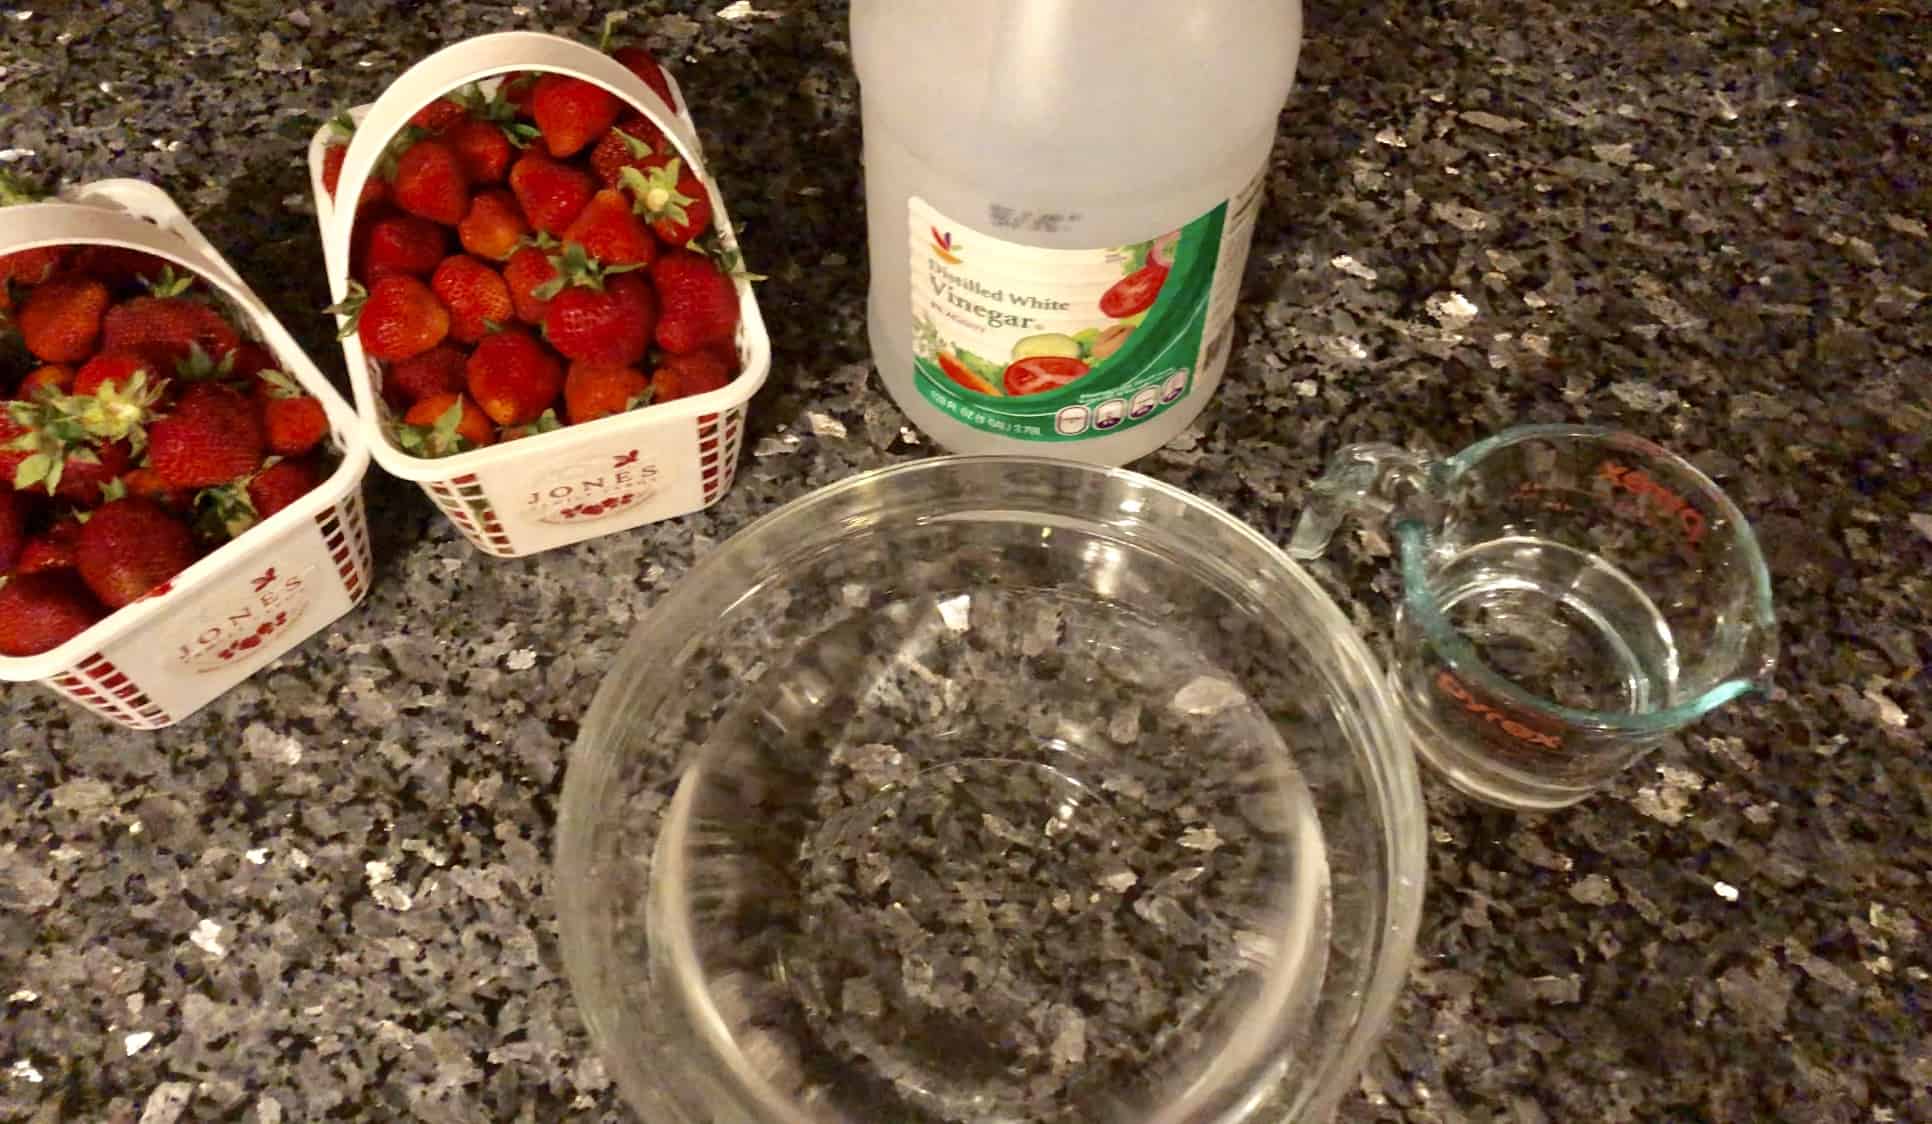 Create a vinegar bath to keep strawberries fresh